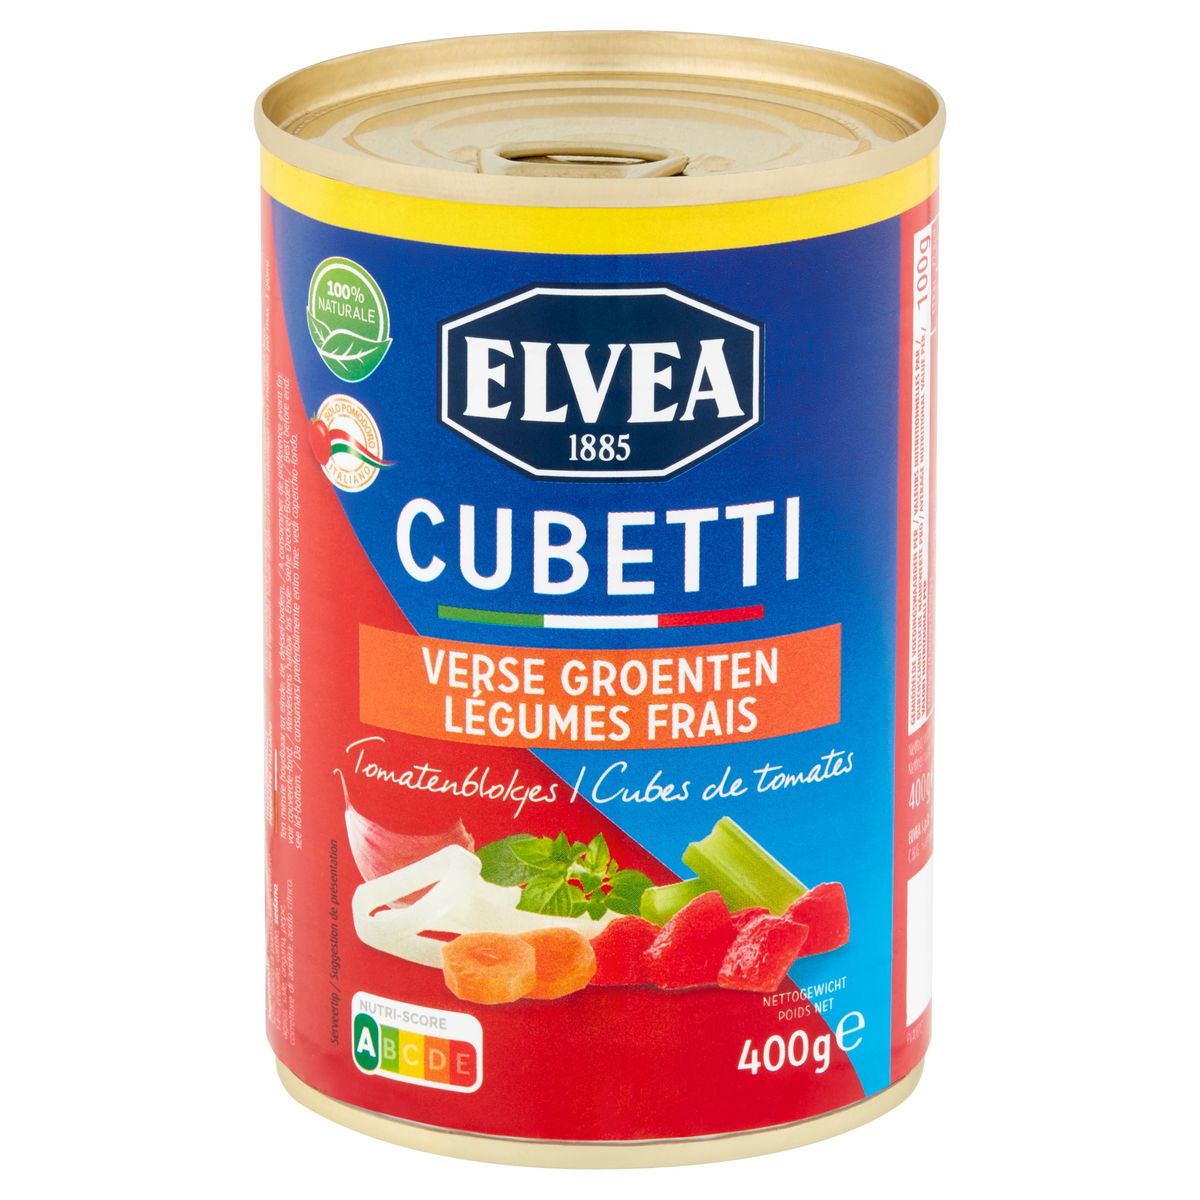 Elvea Cubetti Verse Groenten Tomatenblokjes 400 g